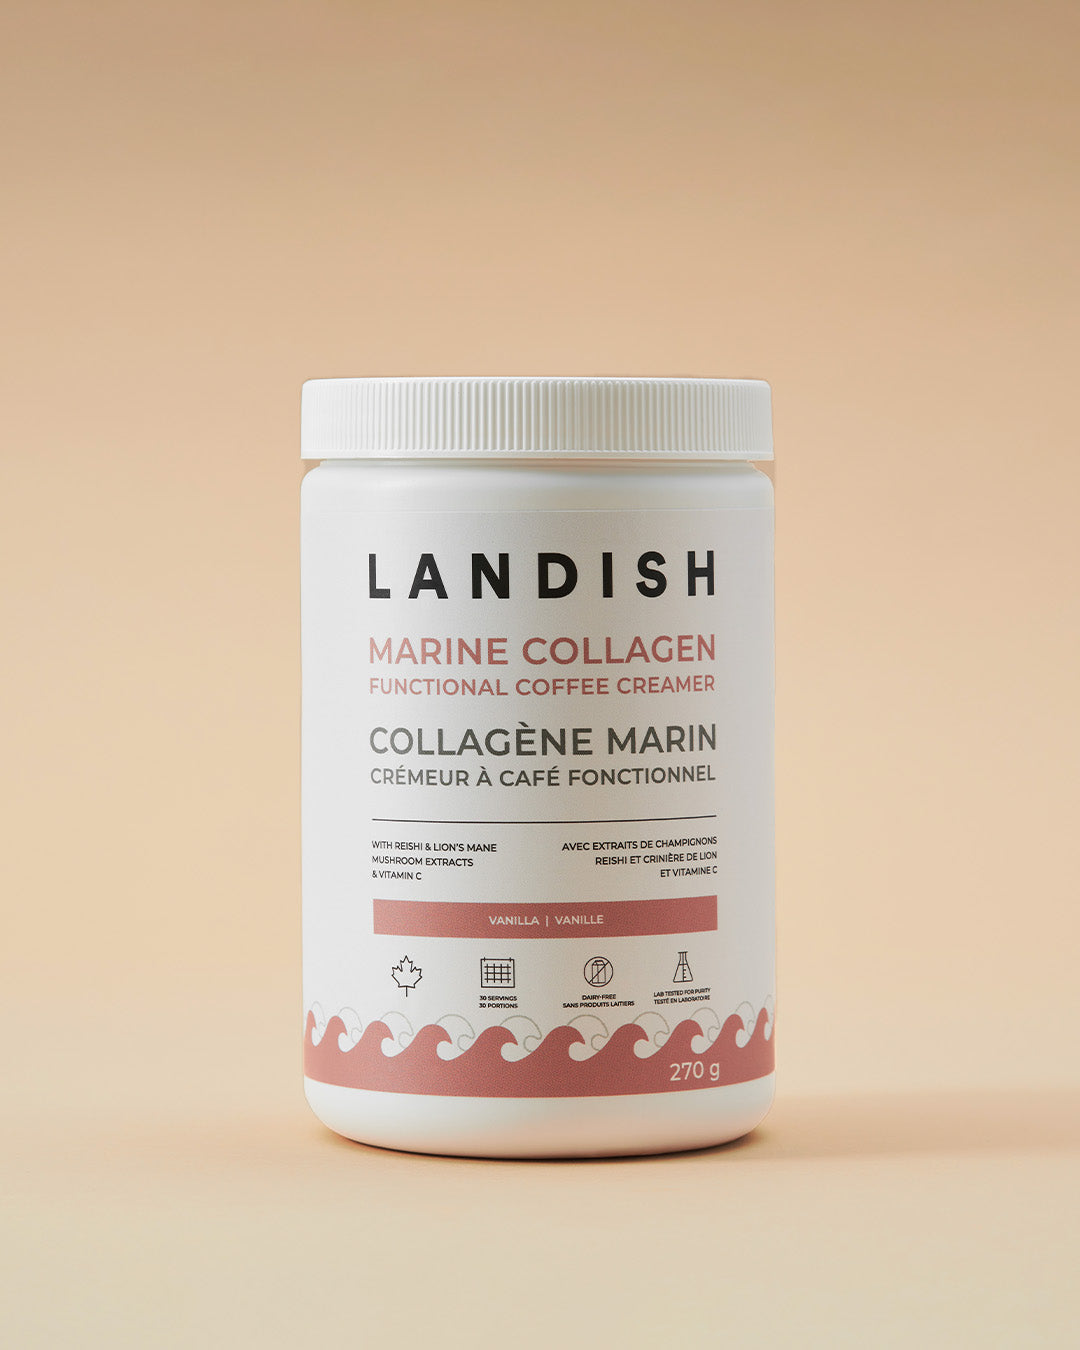 Marine Collagen Coffee Creamer